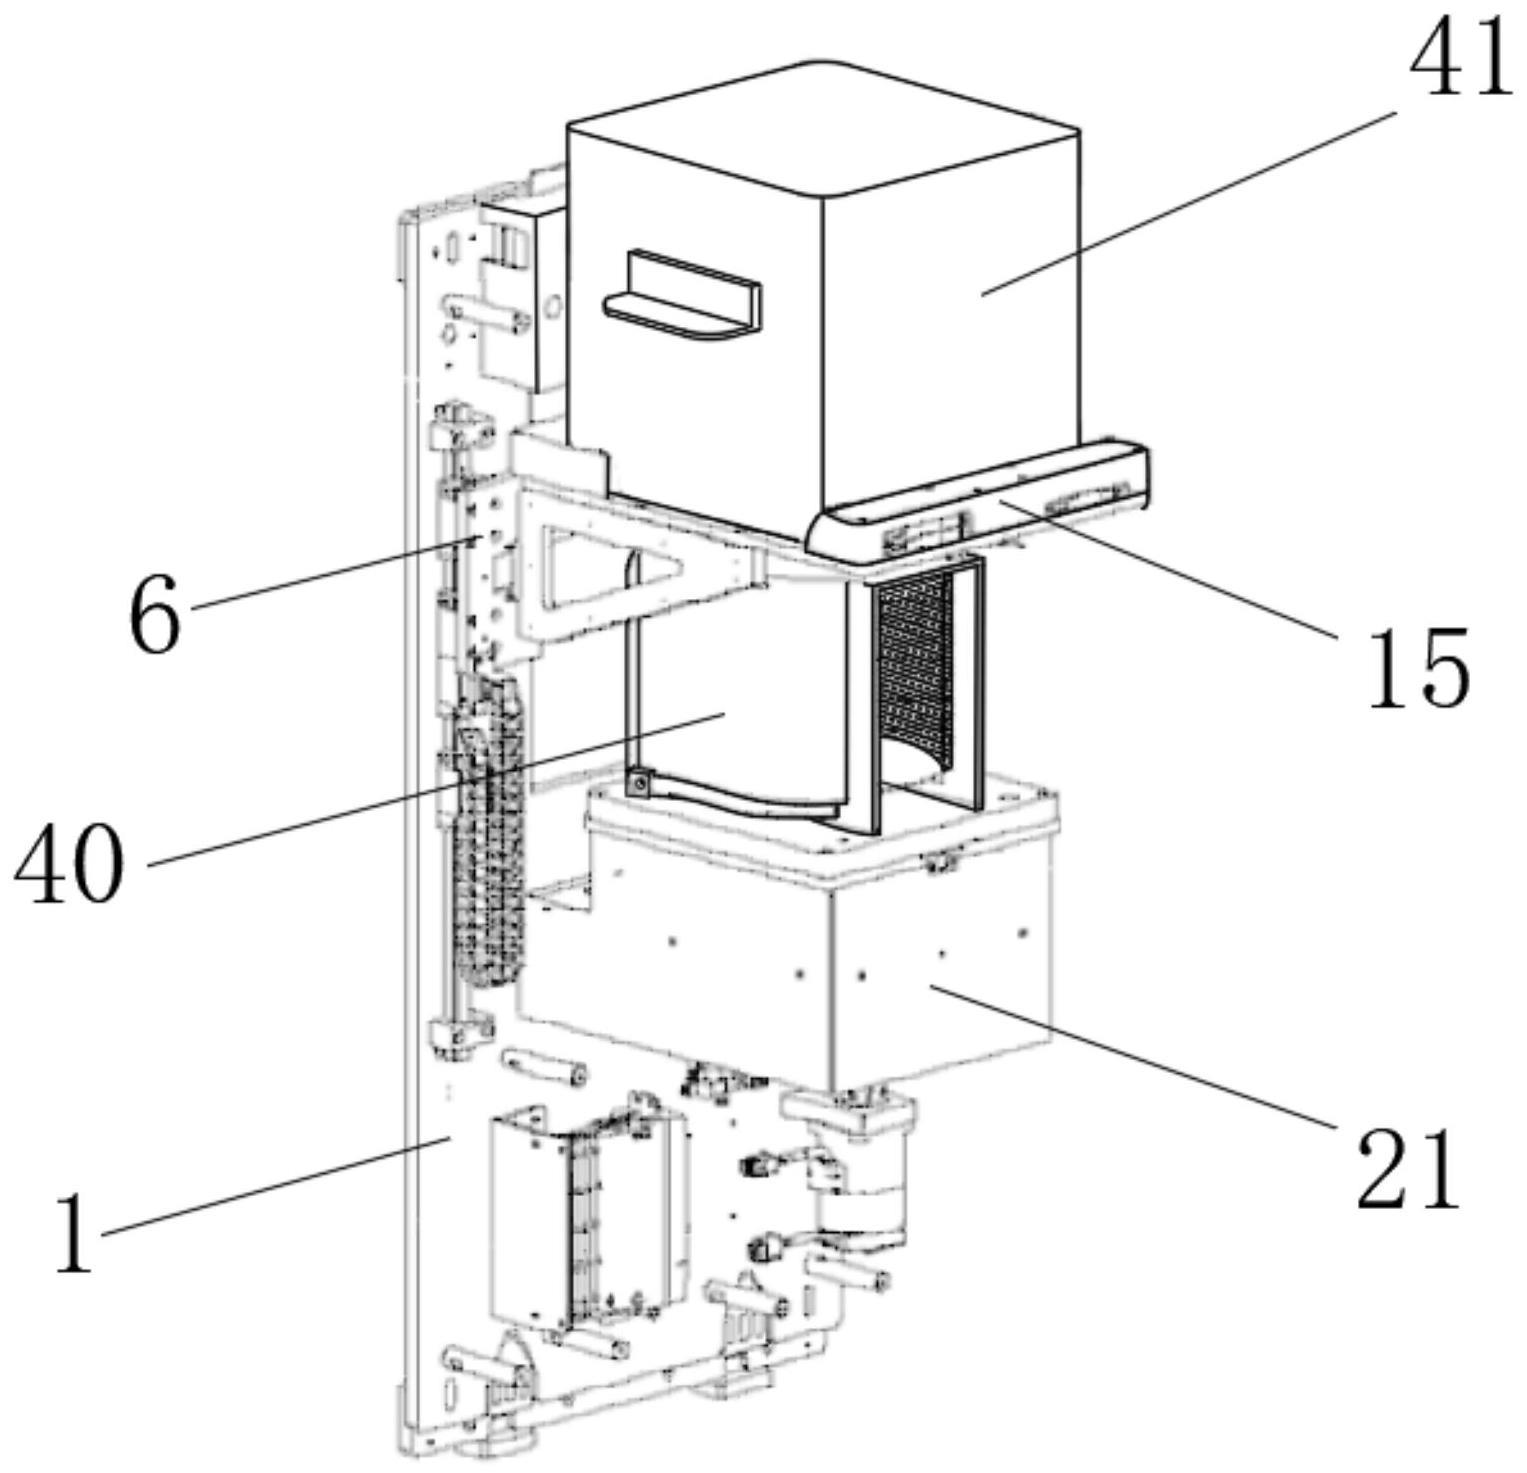 一种适用于8寸晶圆的晶圆盒(SMIF)装载装置的制作方法